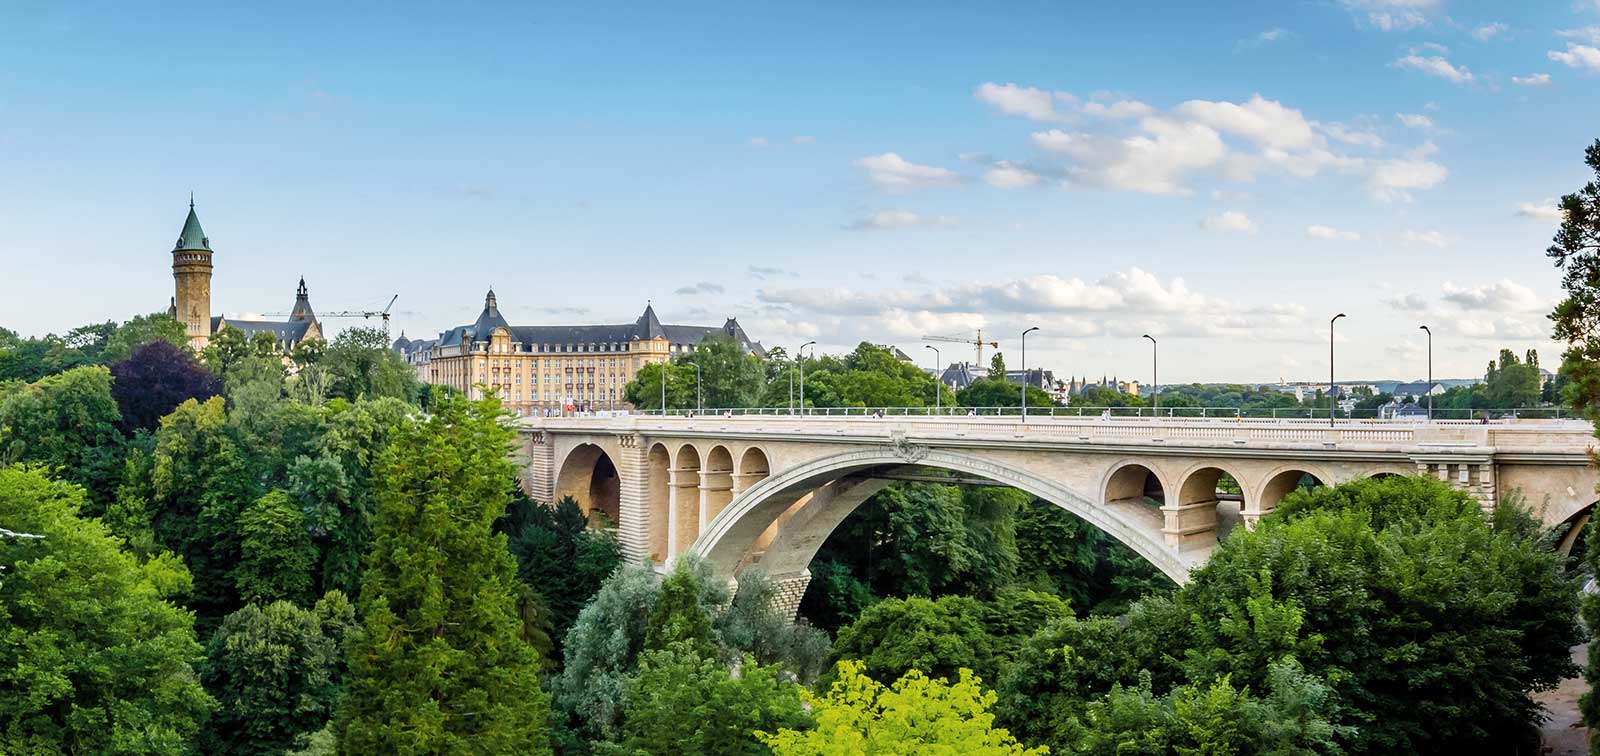 Außenwirtschaft in Luxemburg